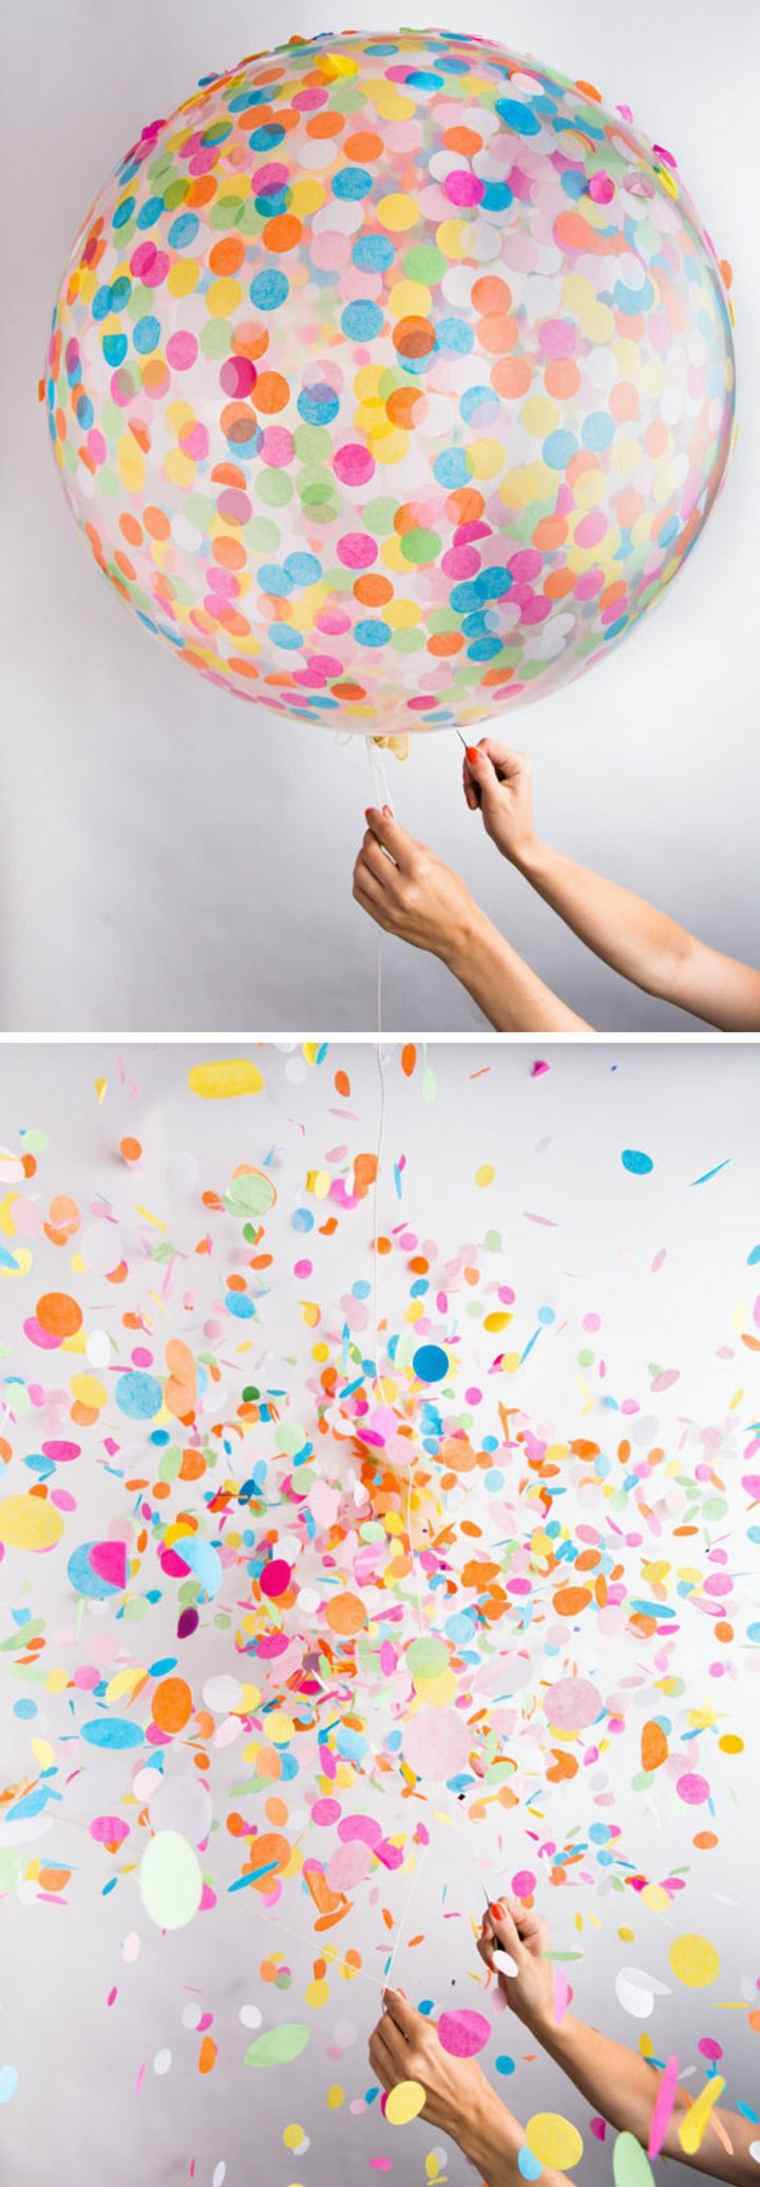 Rođendanski ukrasi boje boje baloni